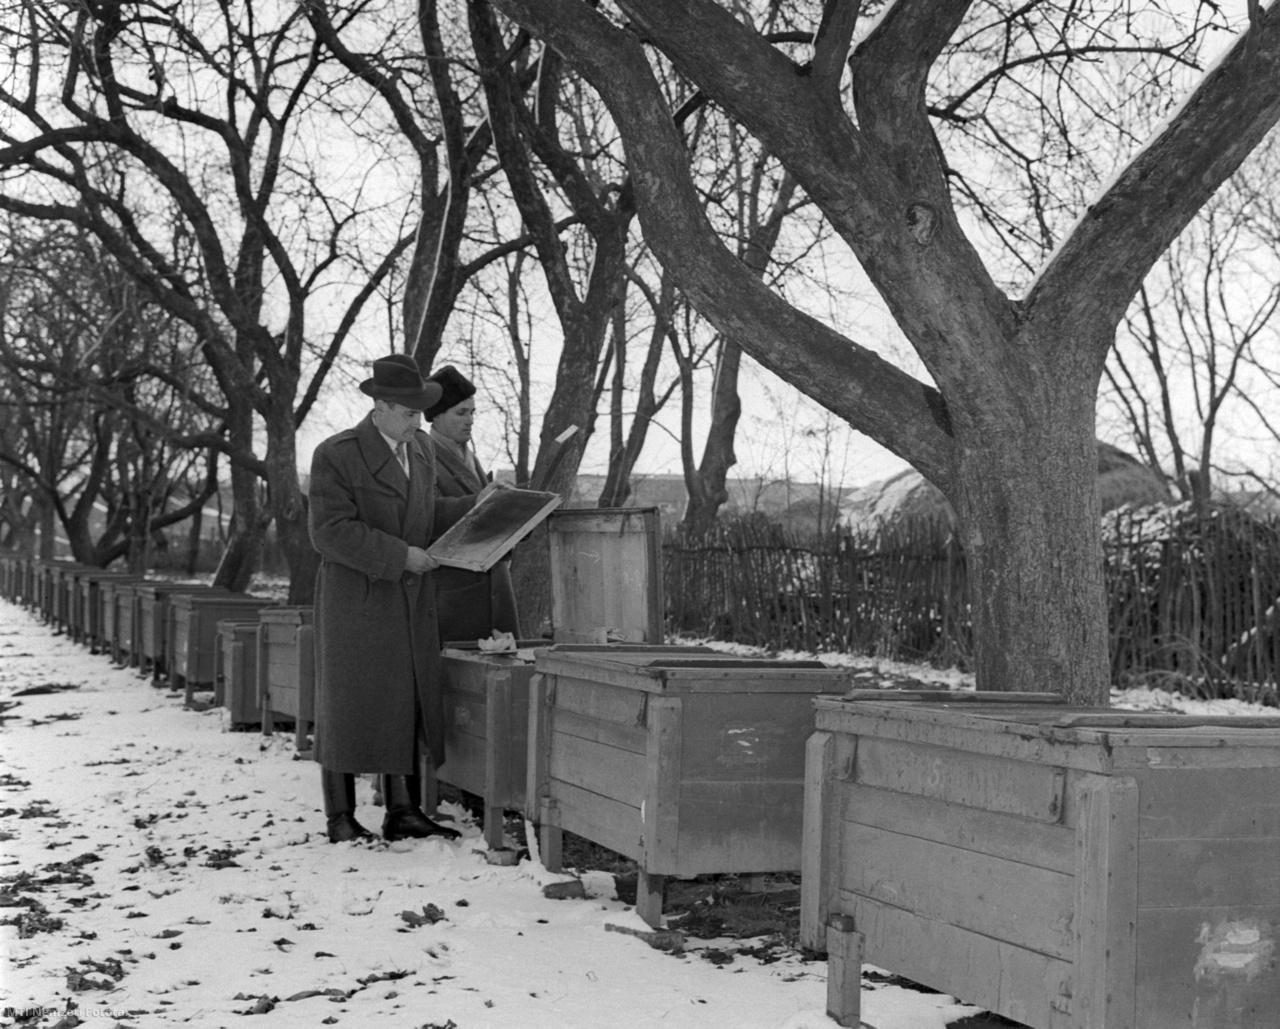 Adorjánháza, 1959. február 22. Az Ady tsz méhészei megnézik a méheket. A termelőszövetkezetnek 80 családból álló méhészete van.